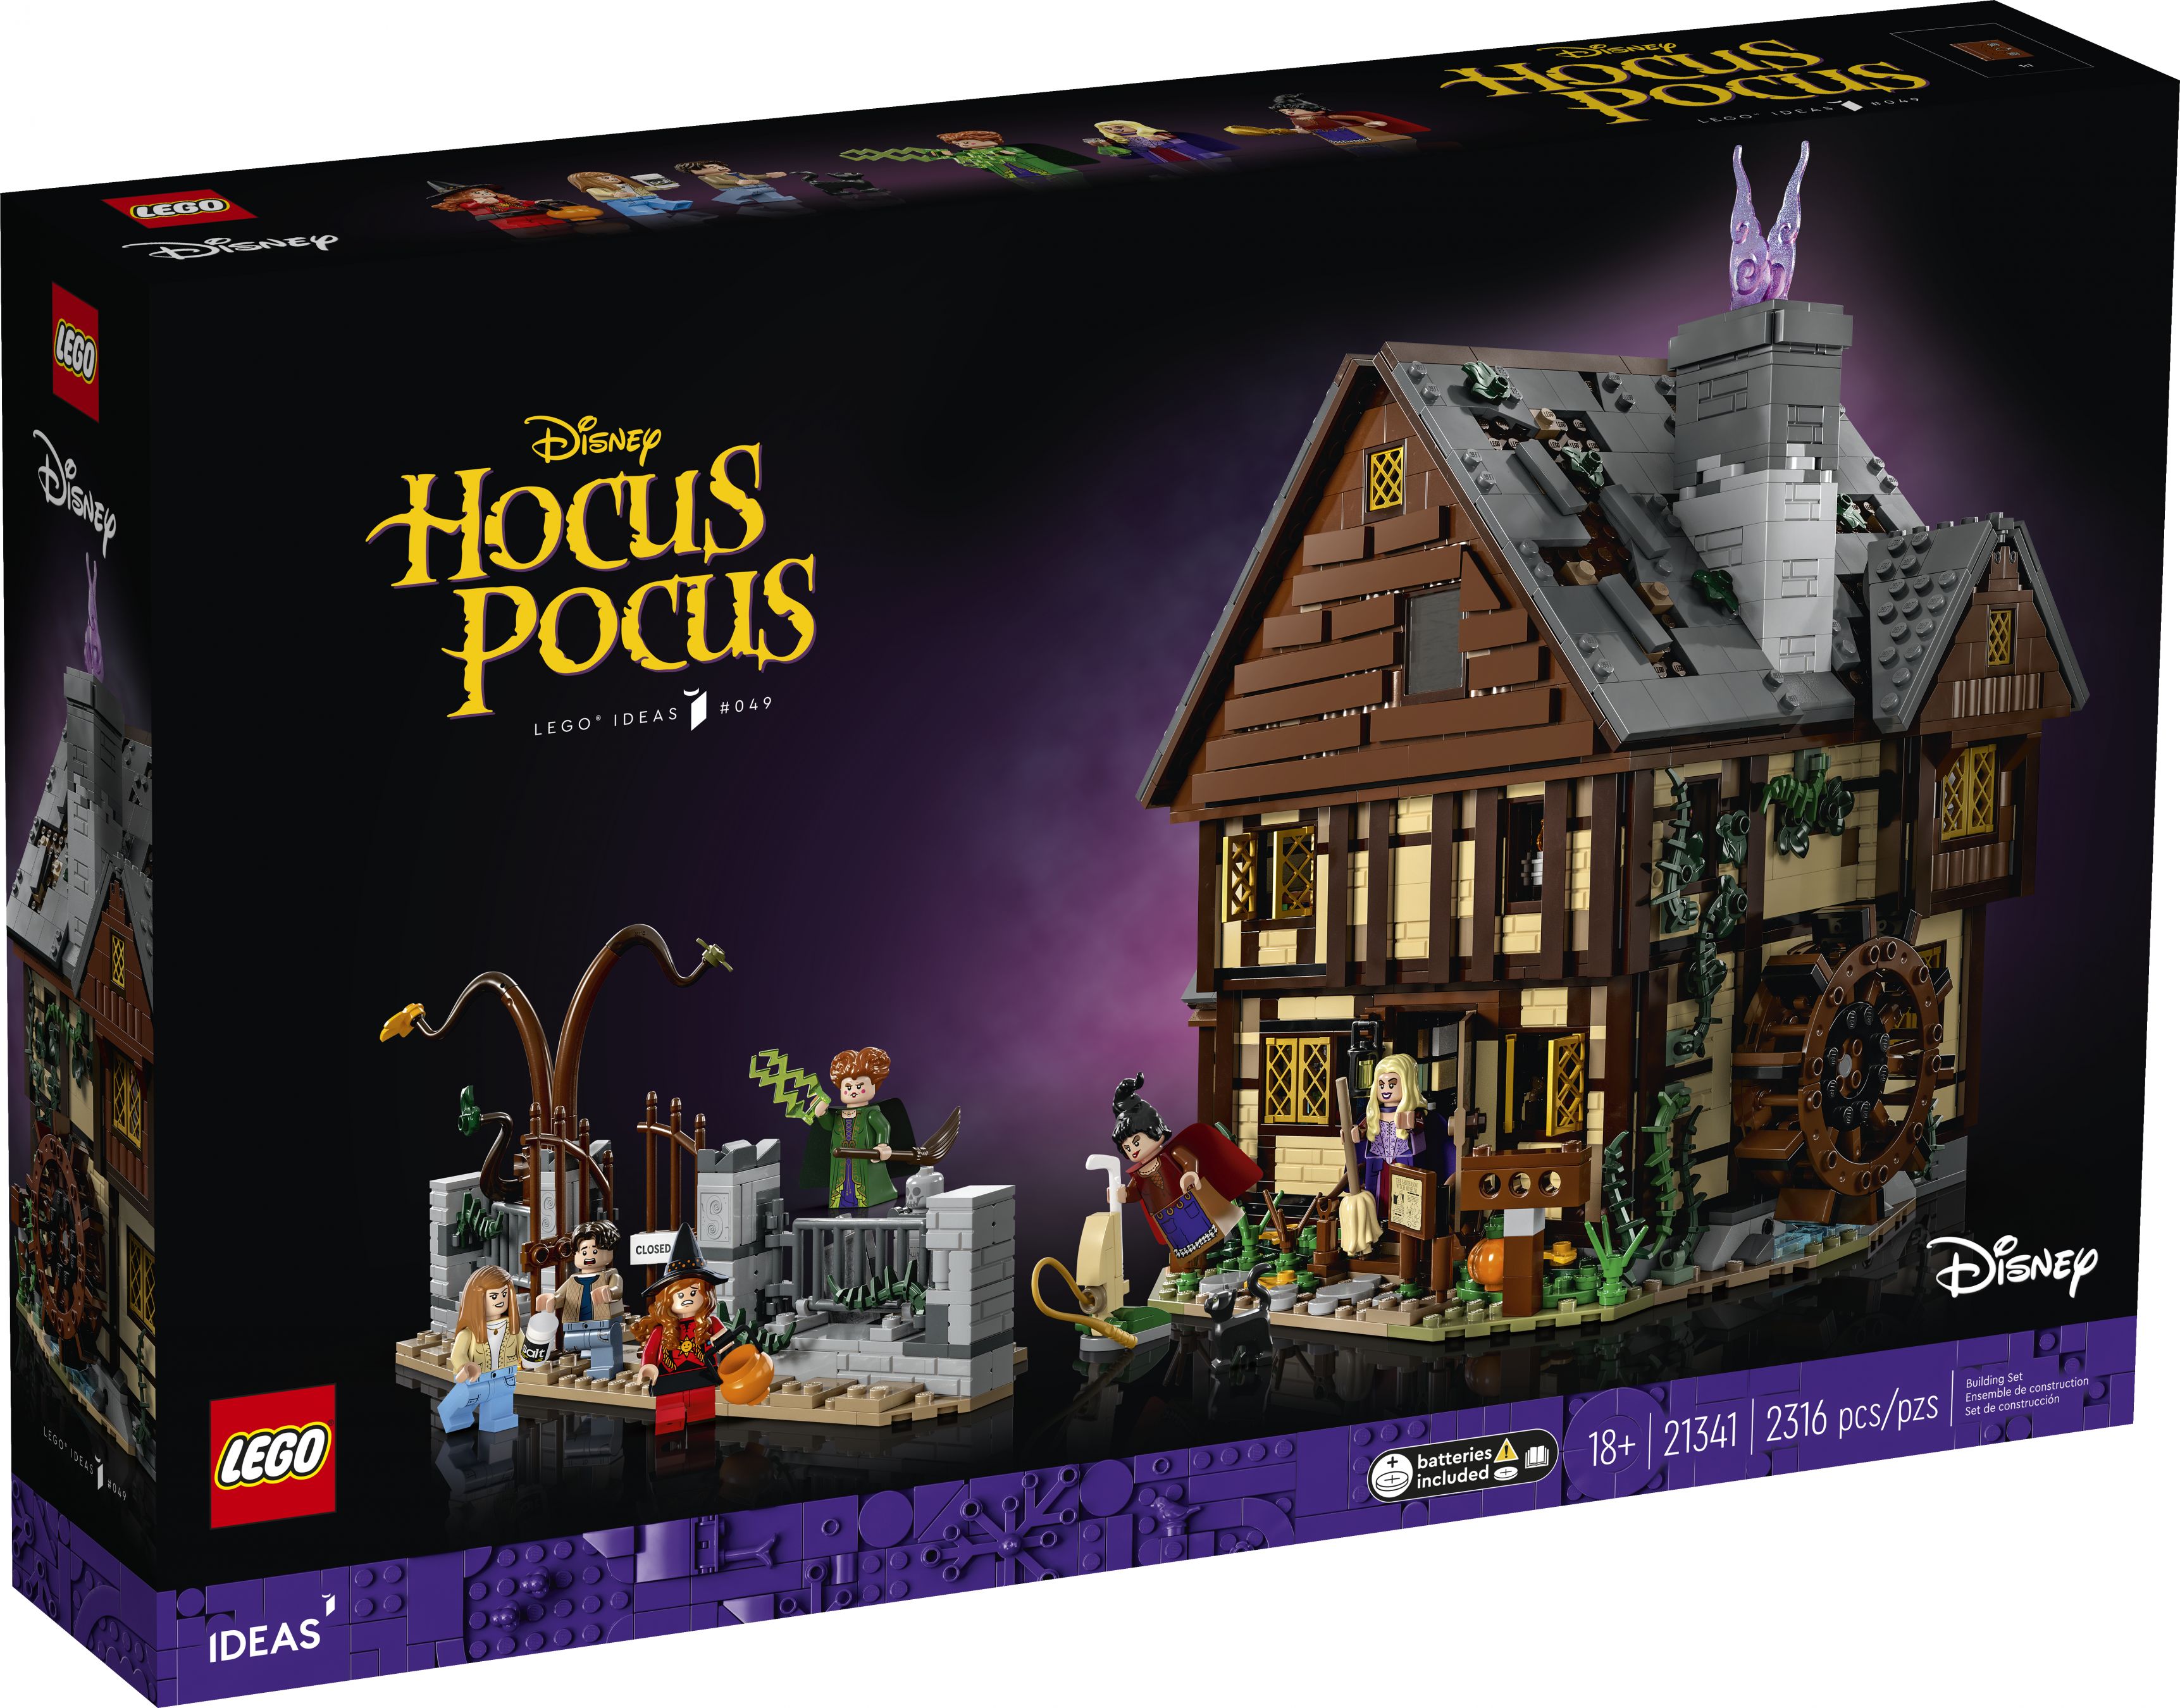 LEGO Ideas 21341 Disney Hocus Pocus: Das Hexenhaus der Sanderson-Schwestern LEGO_21341_Box1_v39.jpg